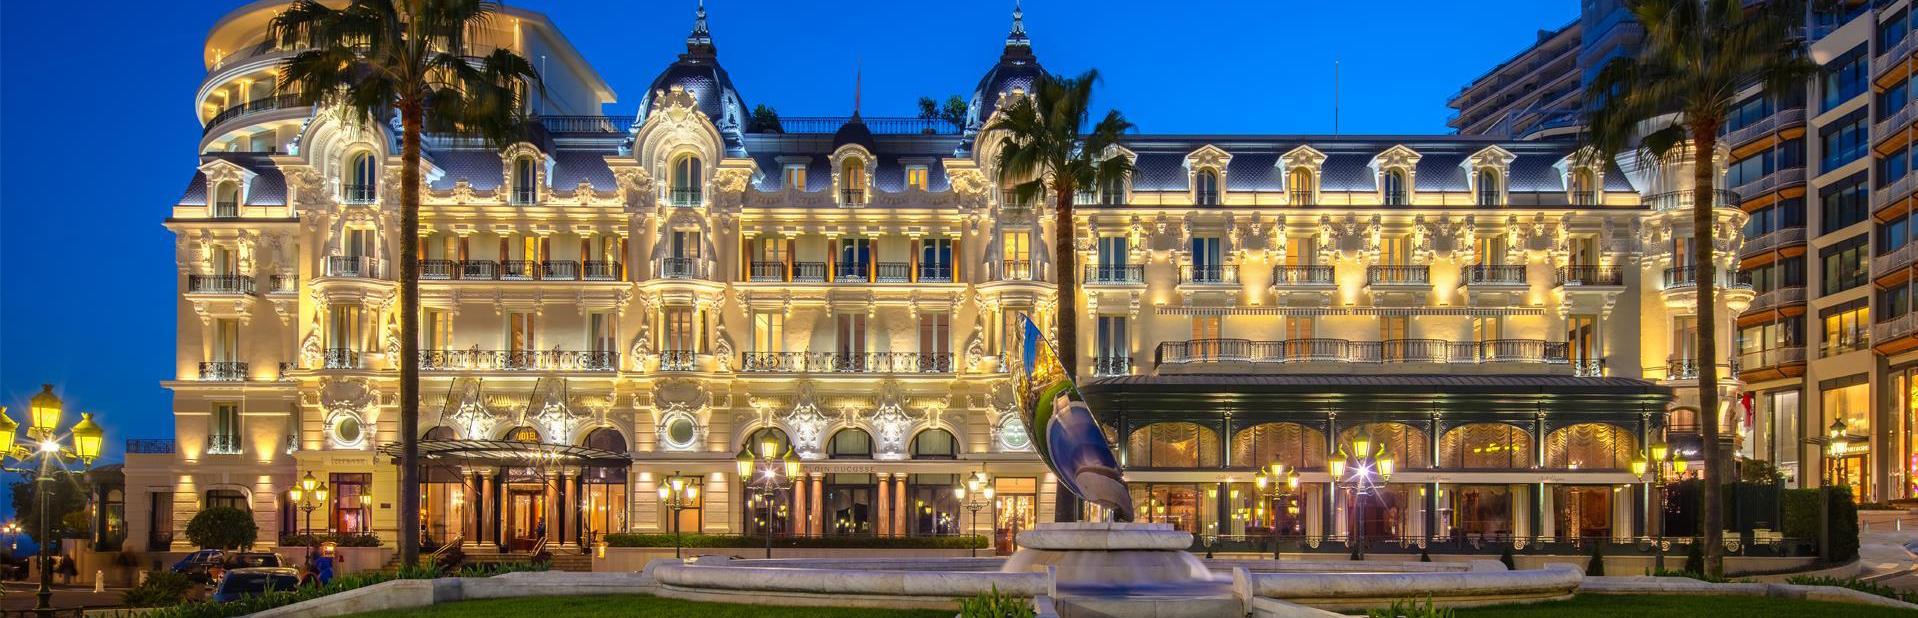 Hotel de Paris Monte-Carlo Монте-Карло